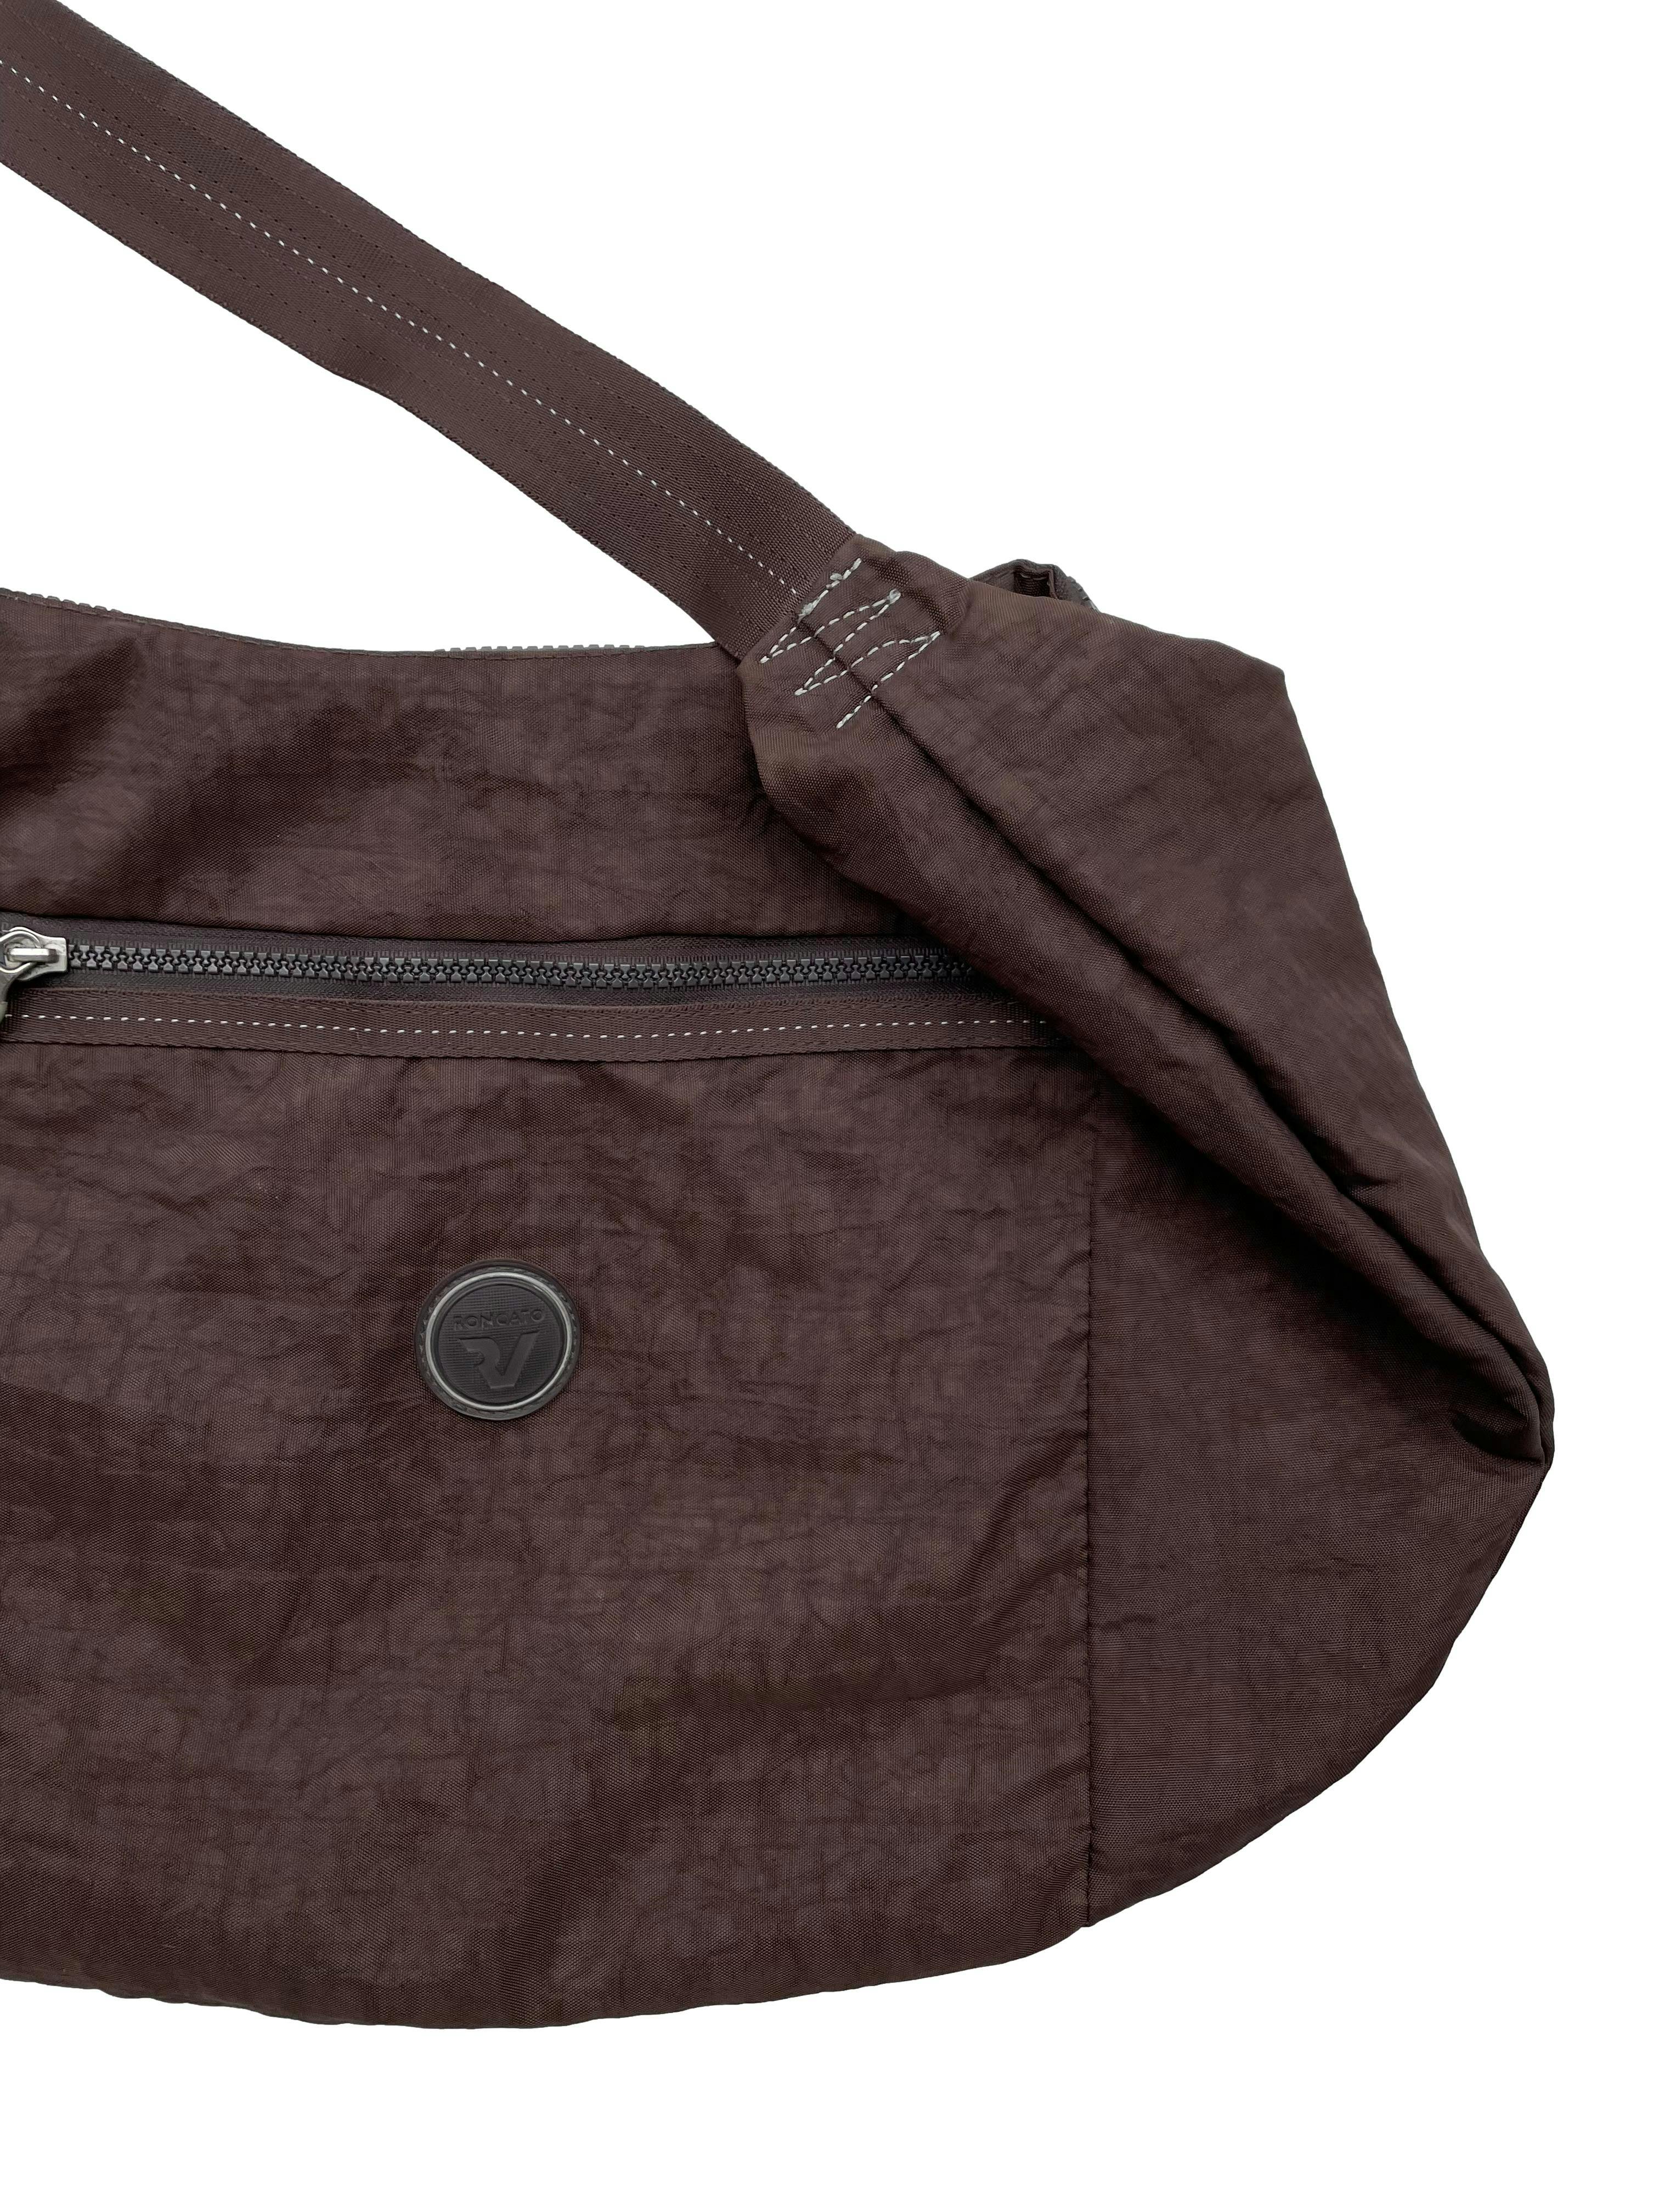 Bolso crossbody Roncato color marrón, asa reguable, forro interno y bolsillos con cierre. Como nuevo. Medidas 55x 33cm.